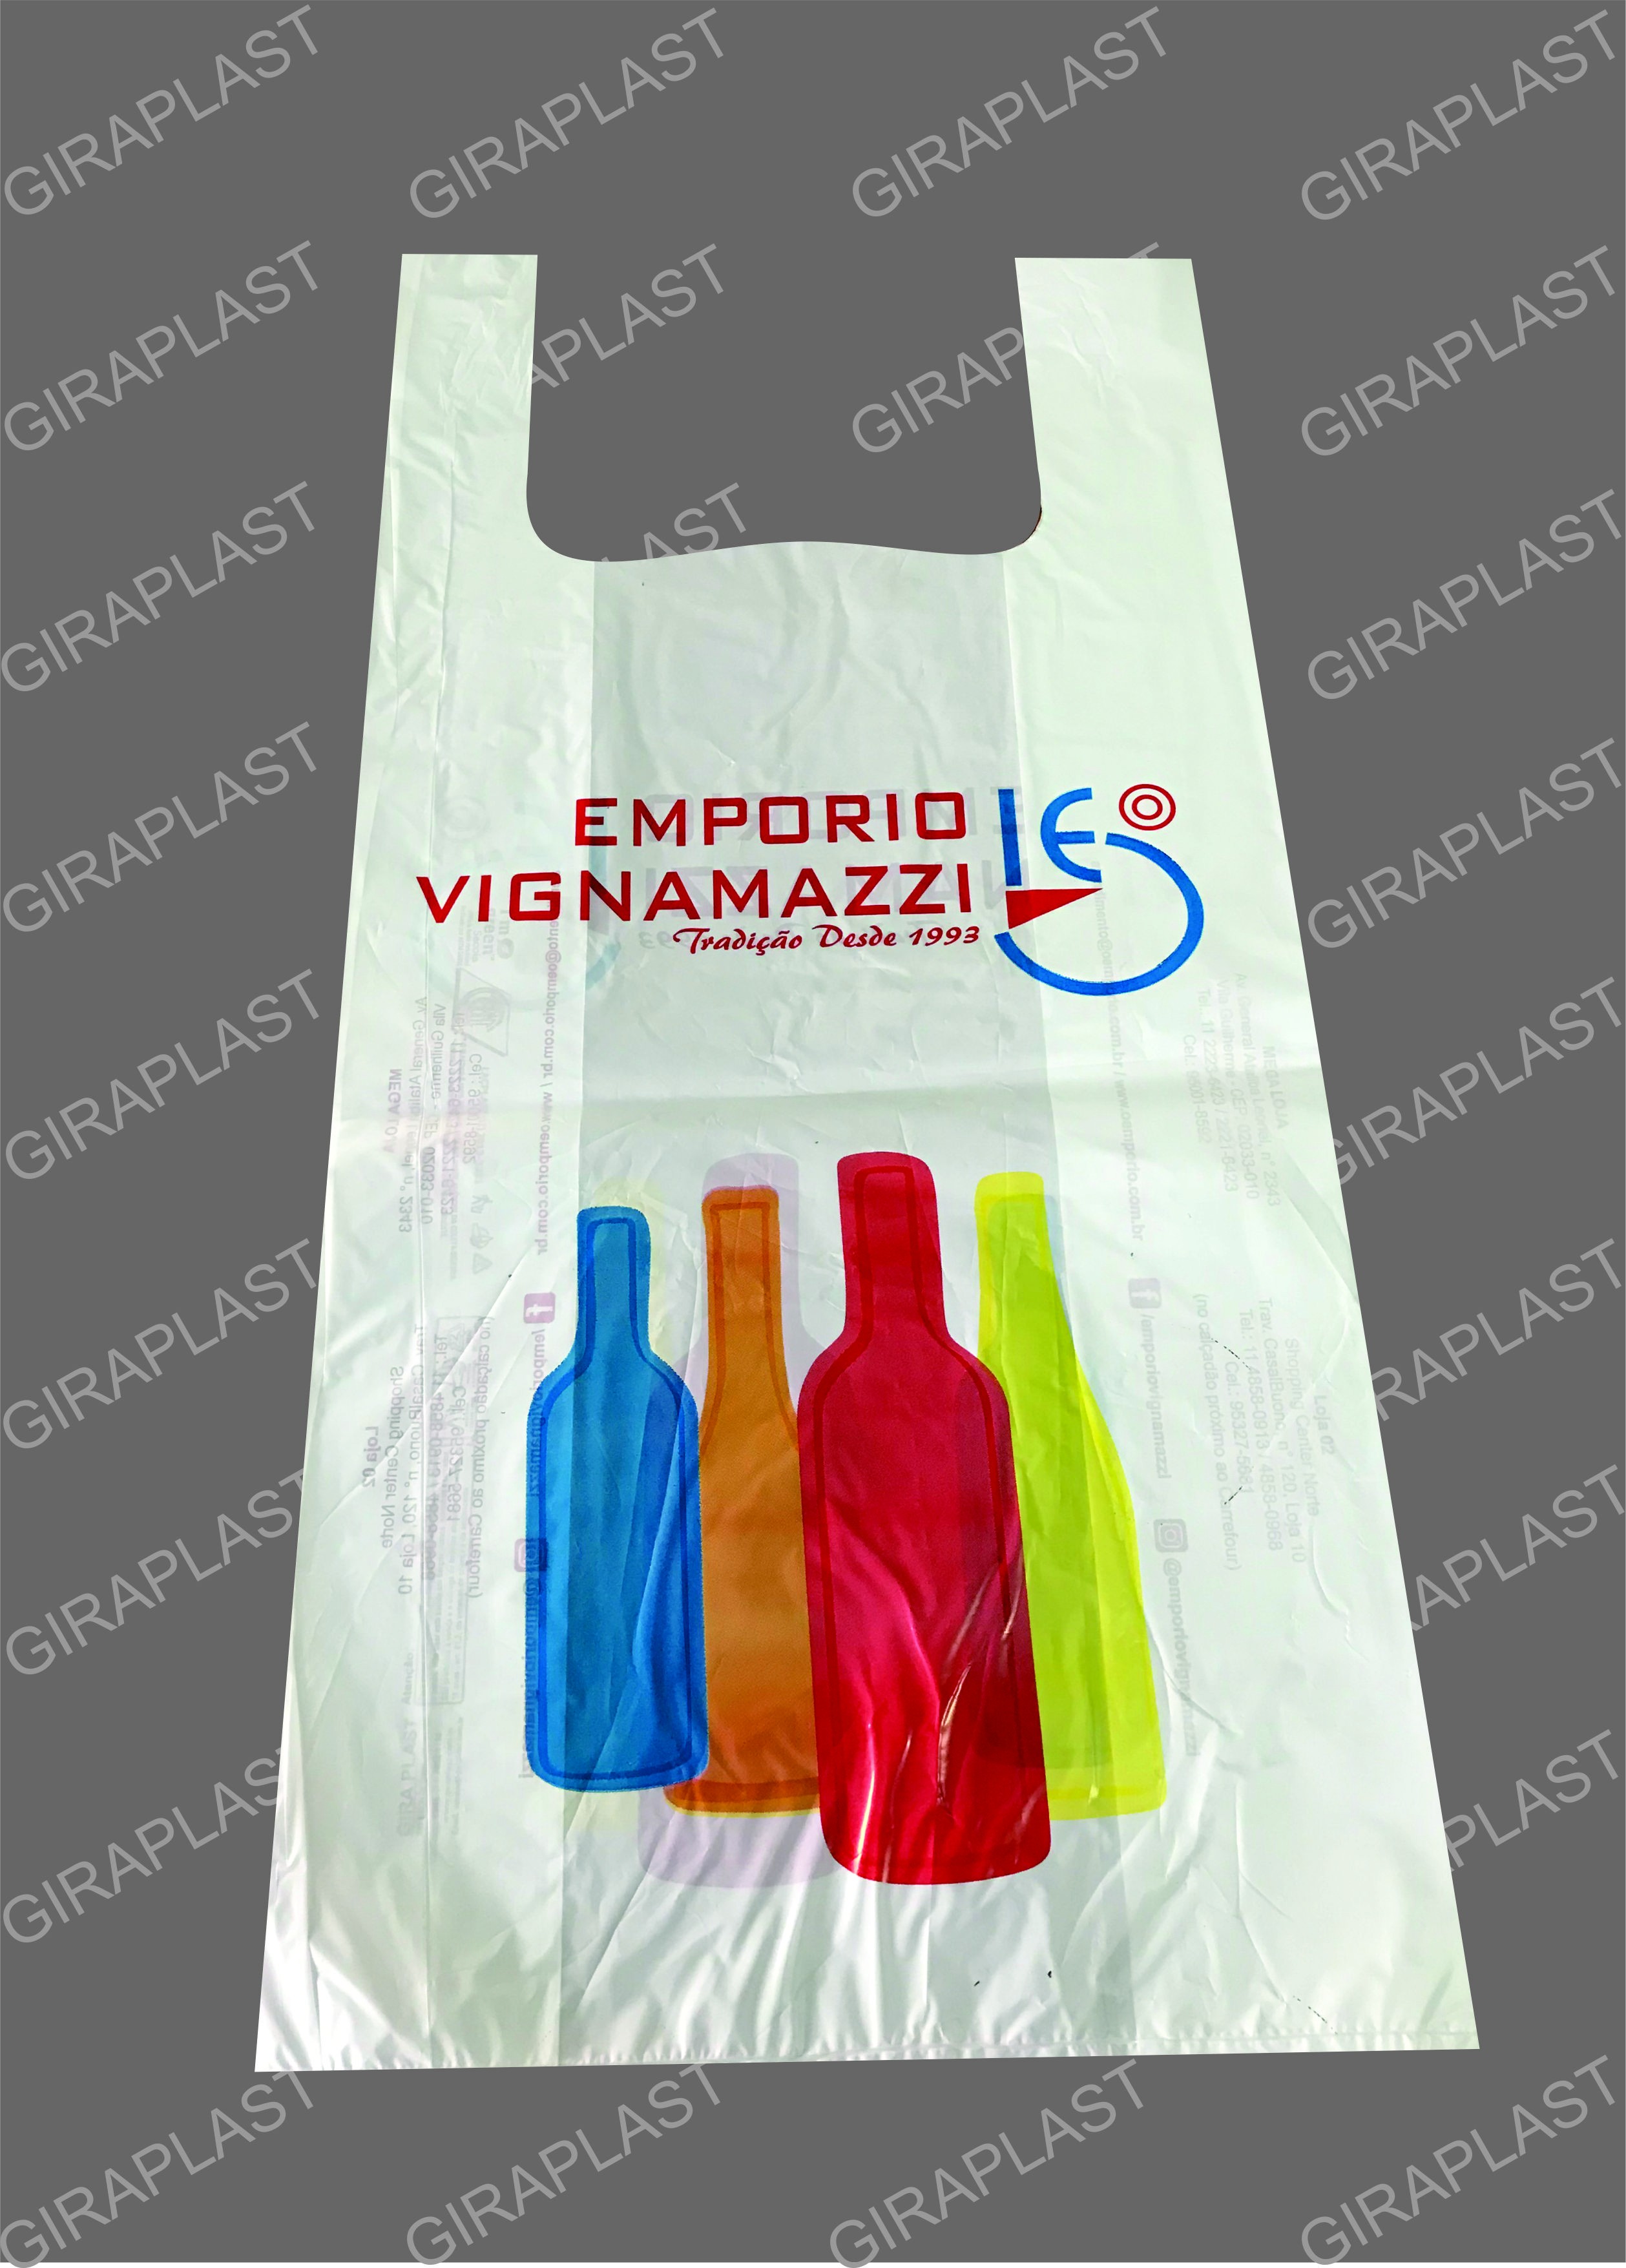 Fábrica de sacolas plásticas personalizadas